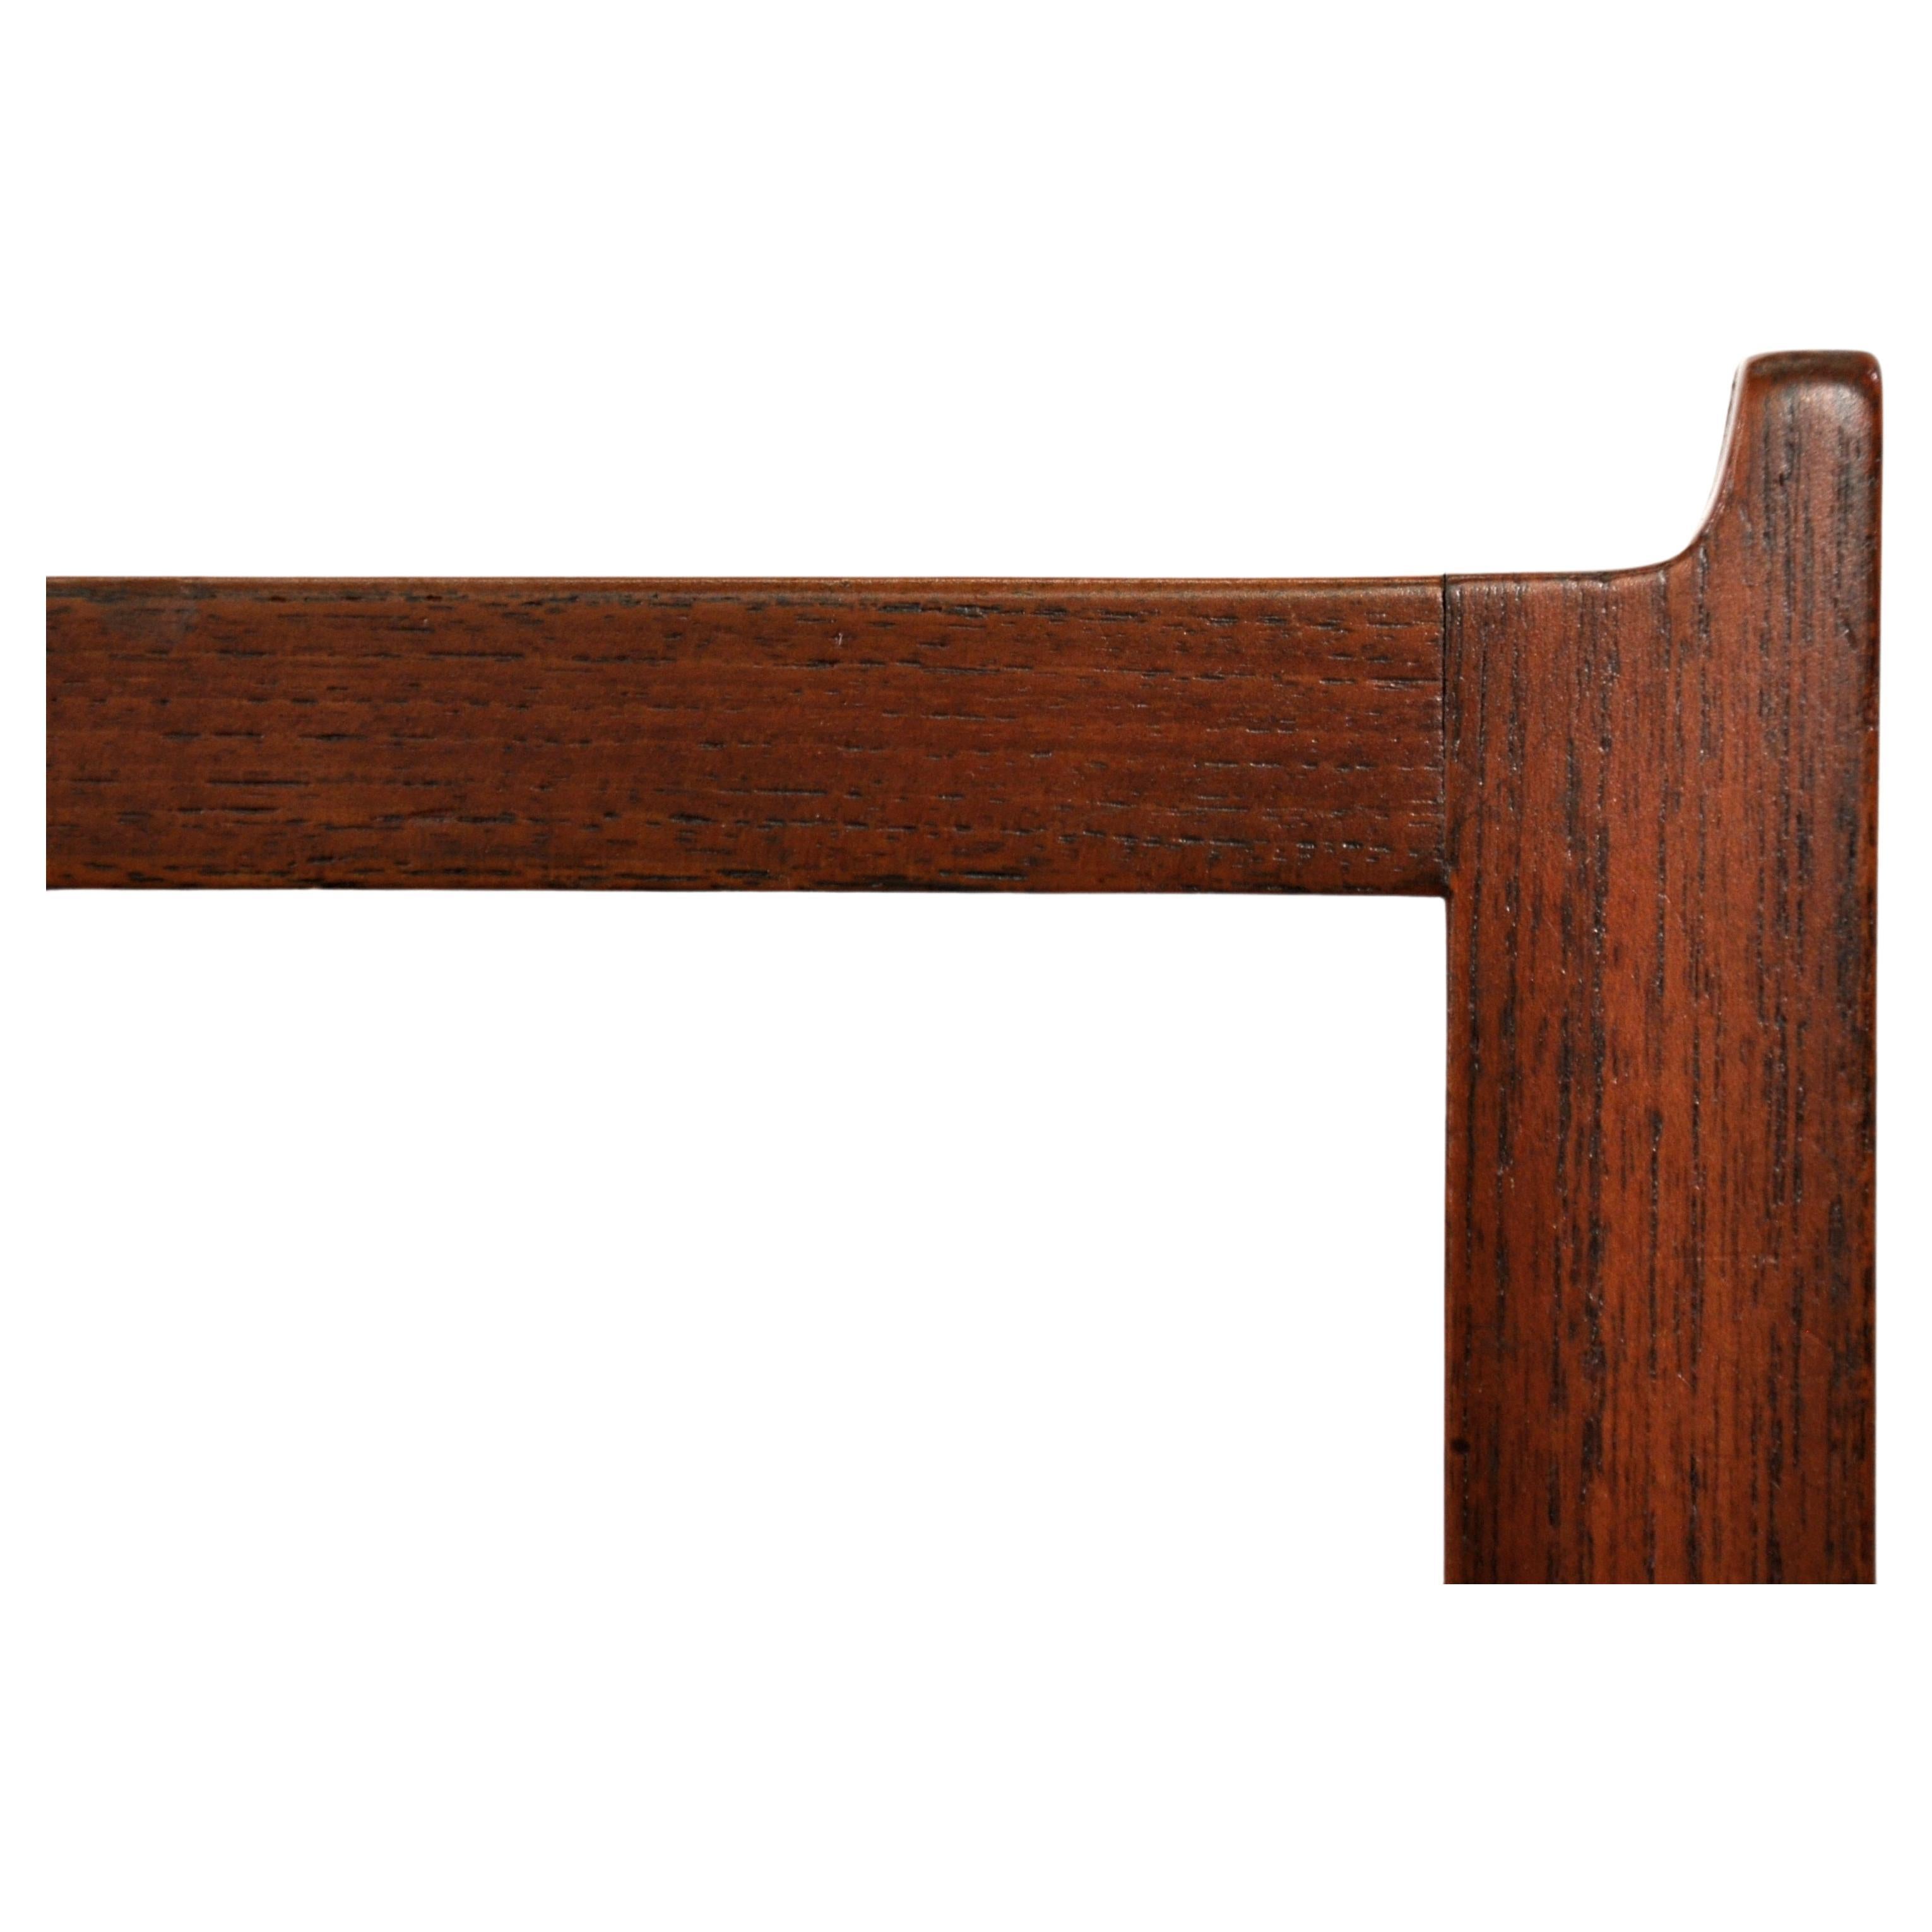 Table d'appoint carrée ou petit banc minimaliste en teck avec des bords latéraux évasés, un grain de bois assorti et des pieds et des clés en teck massif. Conçue dans les années 1960 par Brode Blindheim et fabriquée à Sykkylven, en Norvège, la table